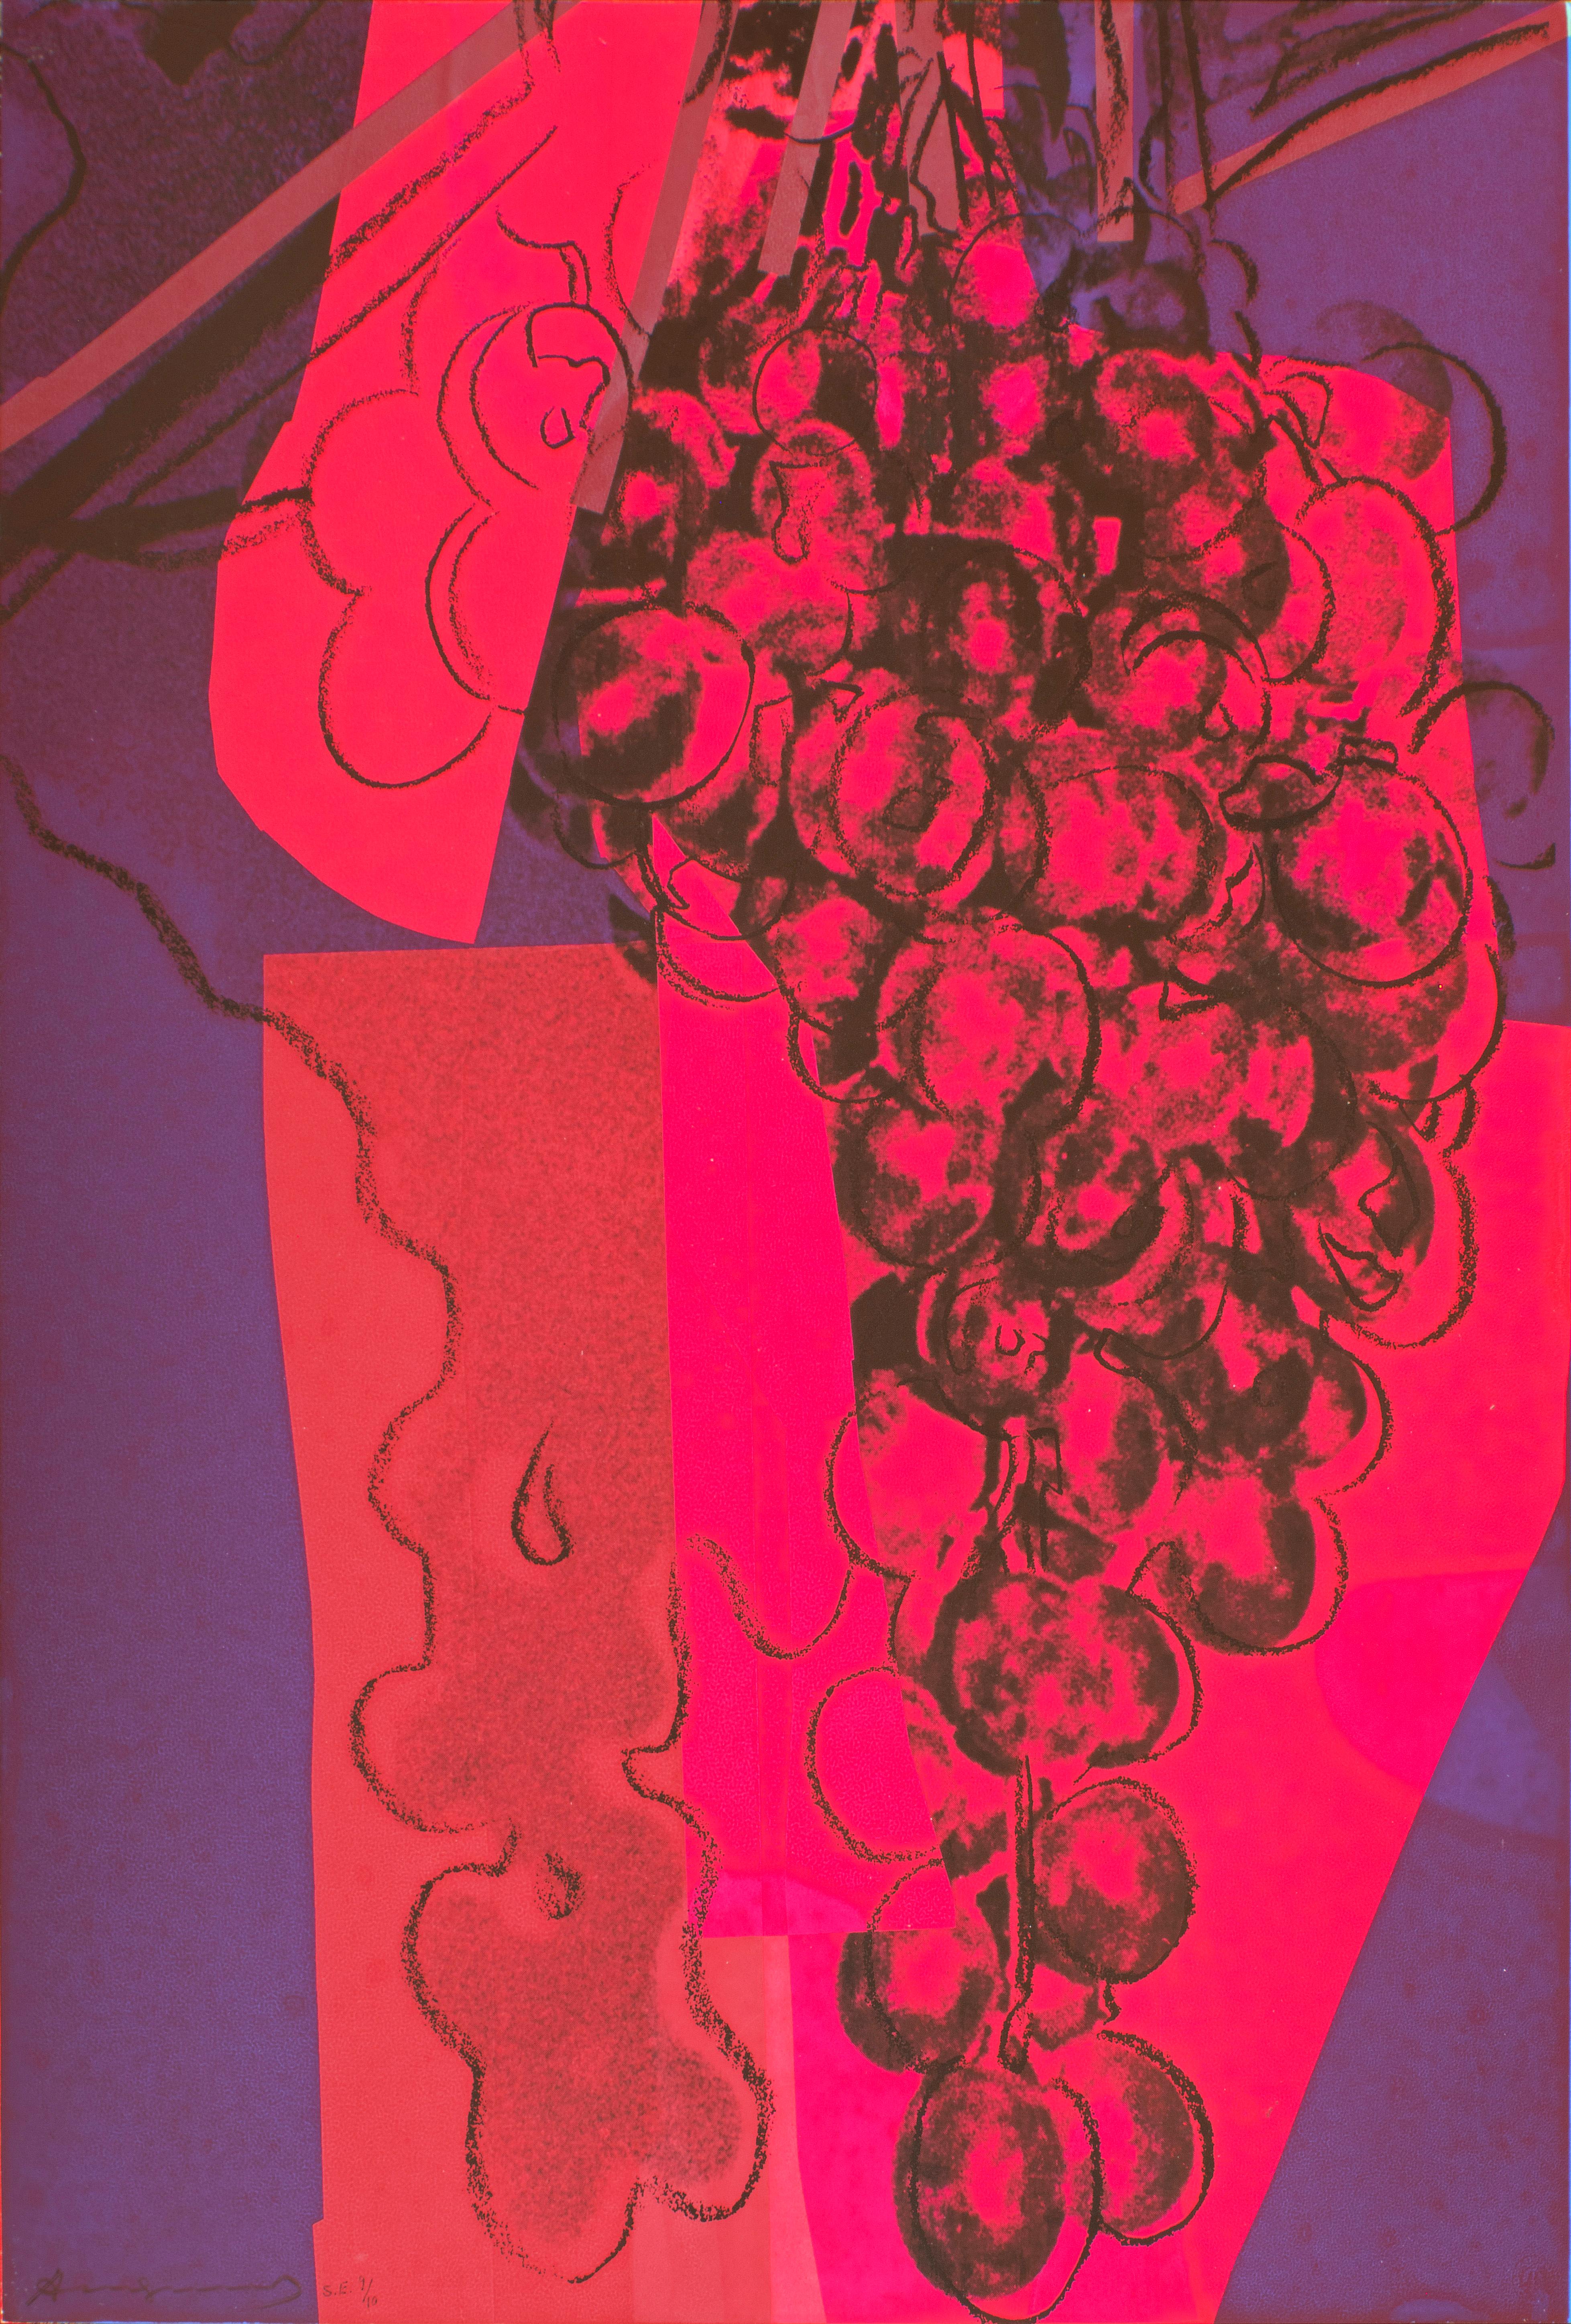 Andy Warhol Still-Life Print - Grapes